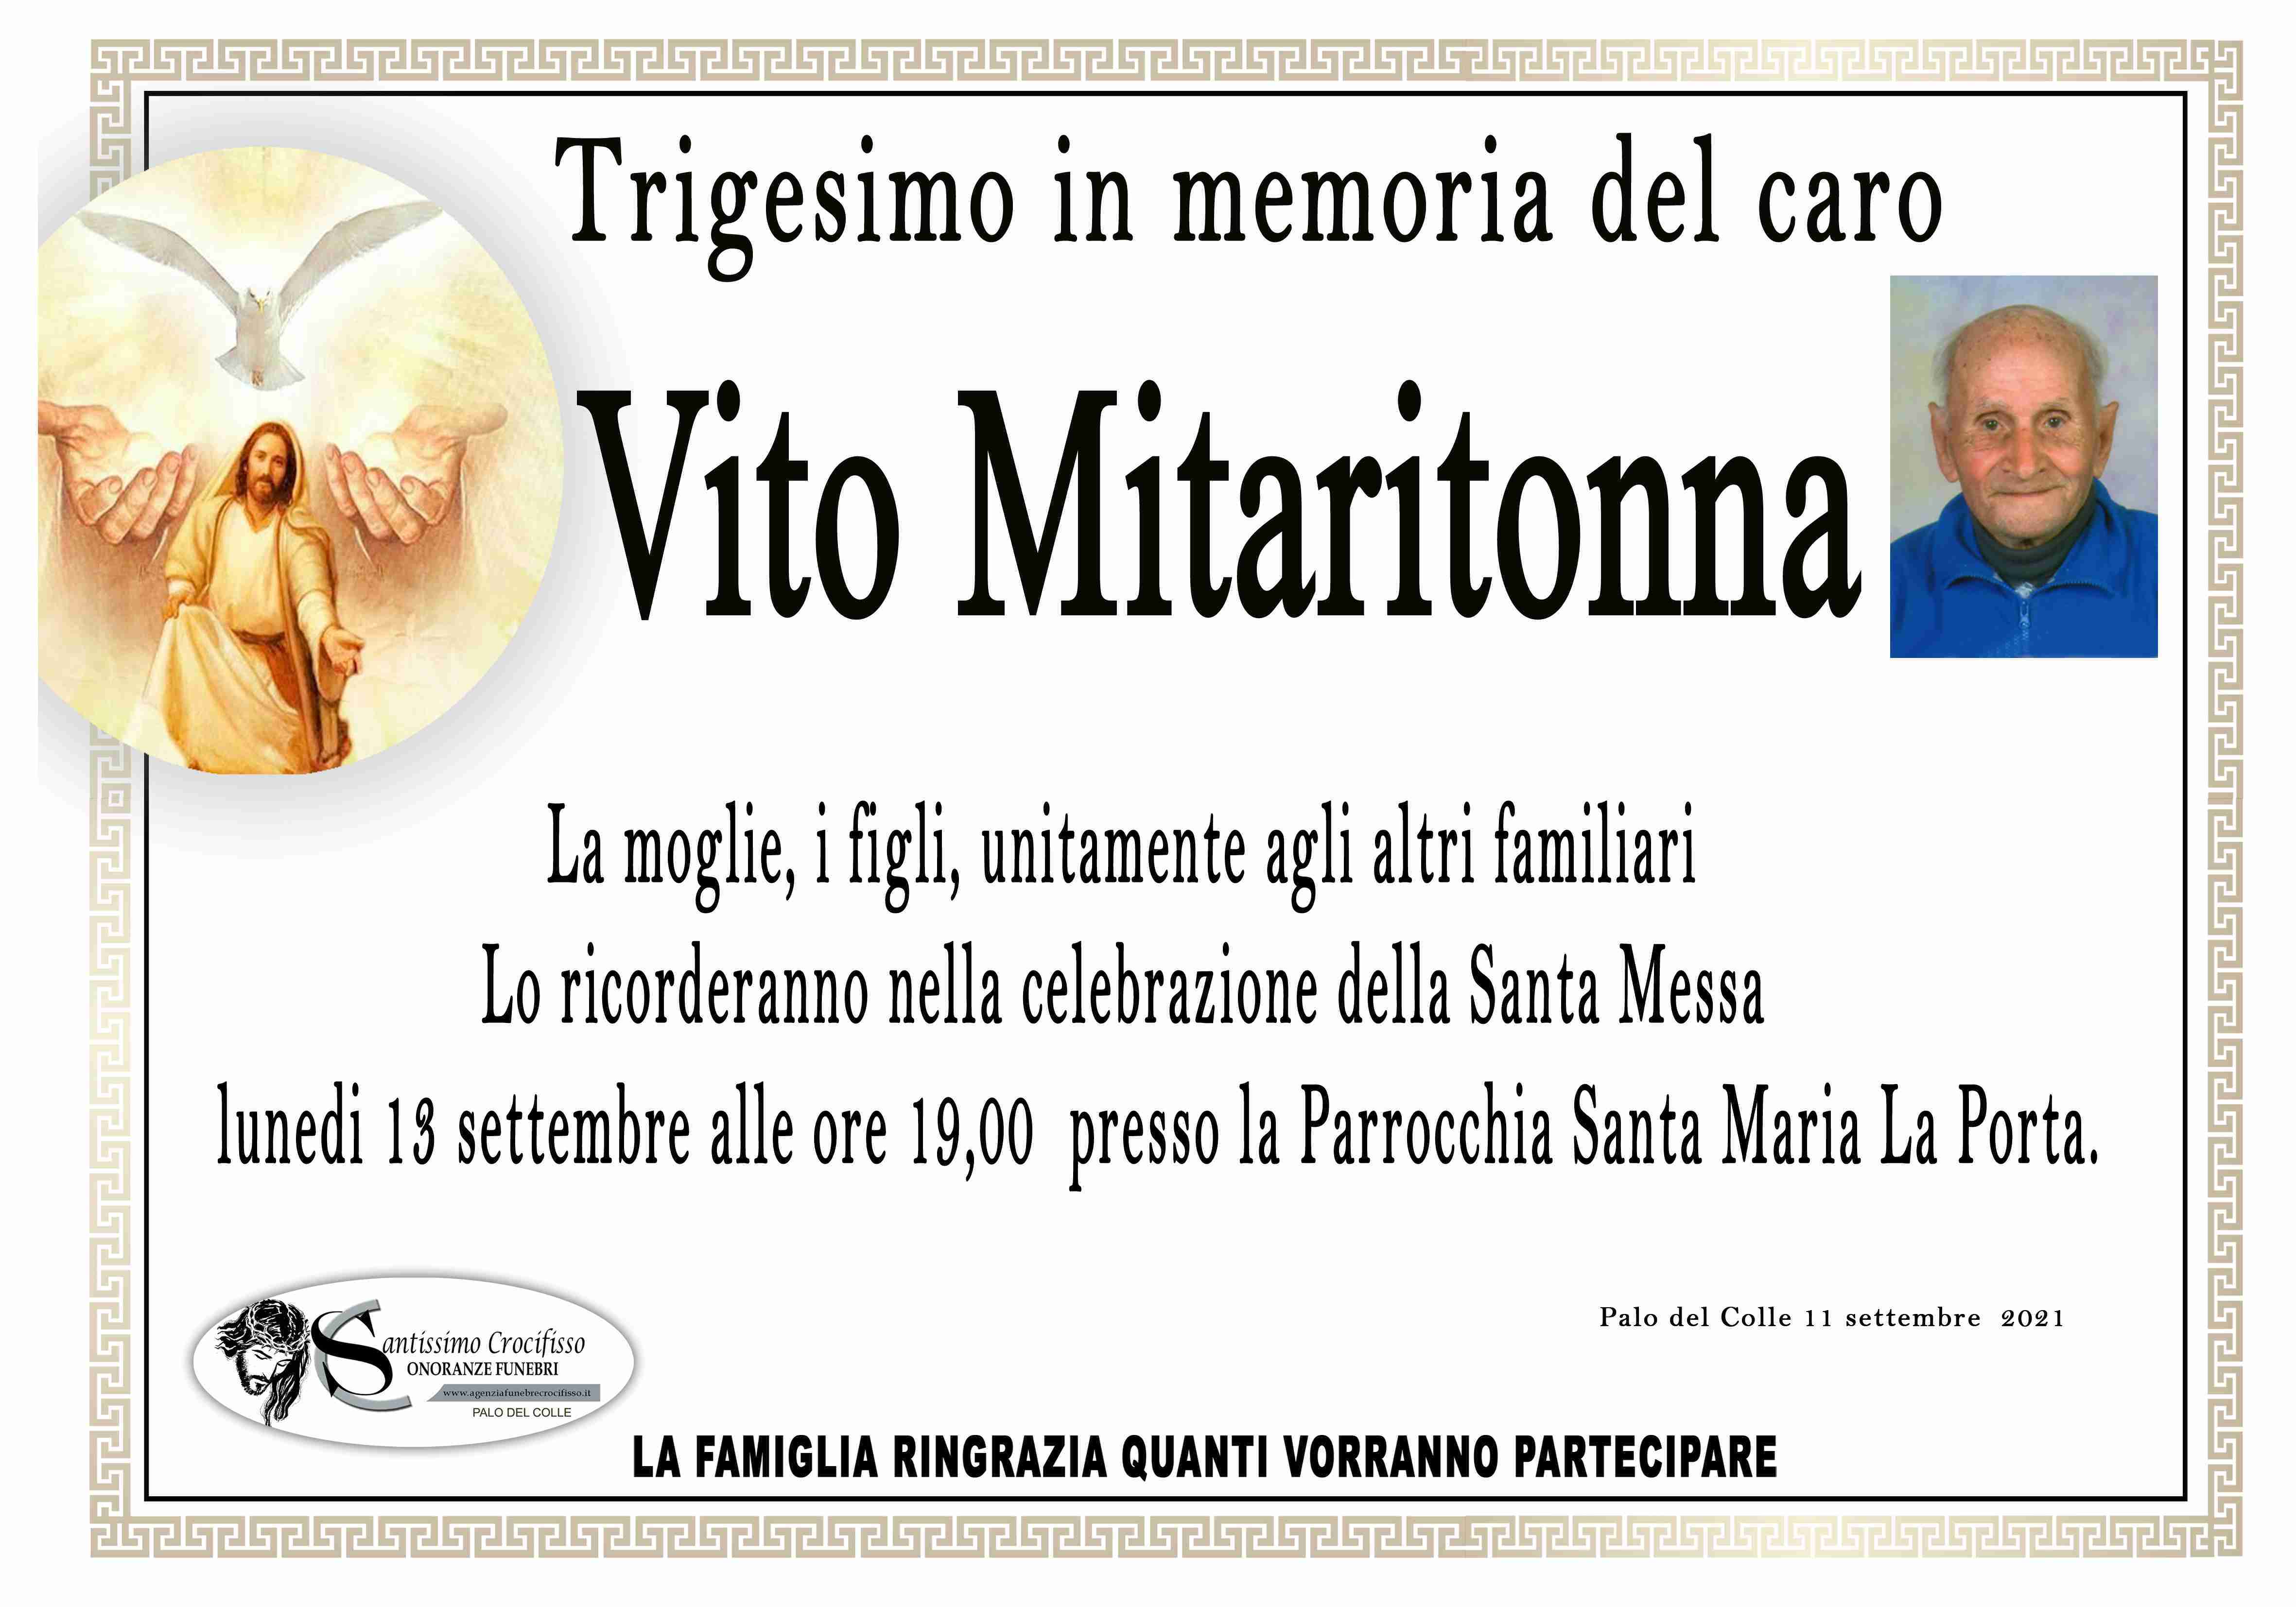 Vito Mitaritonna